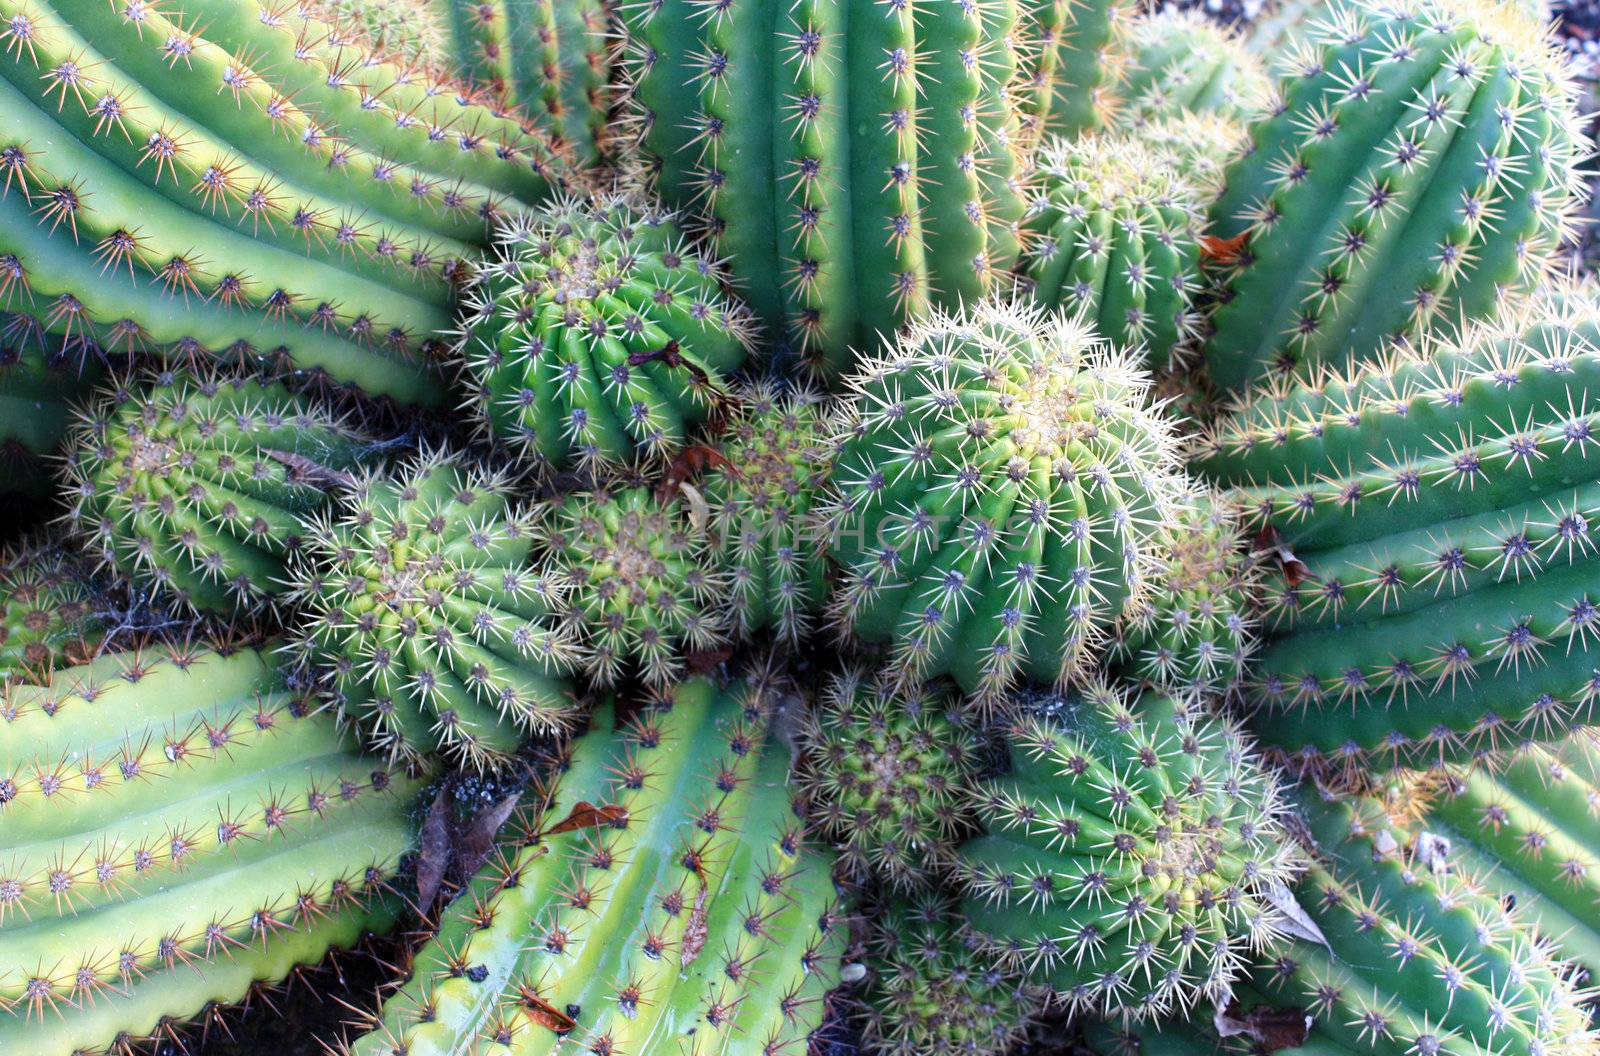 A green spreading Hedgehog Cactus